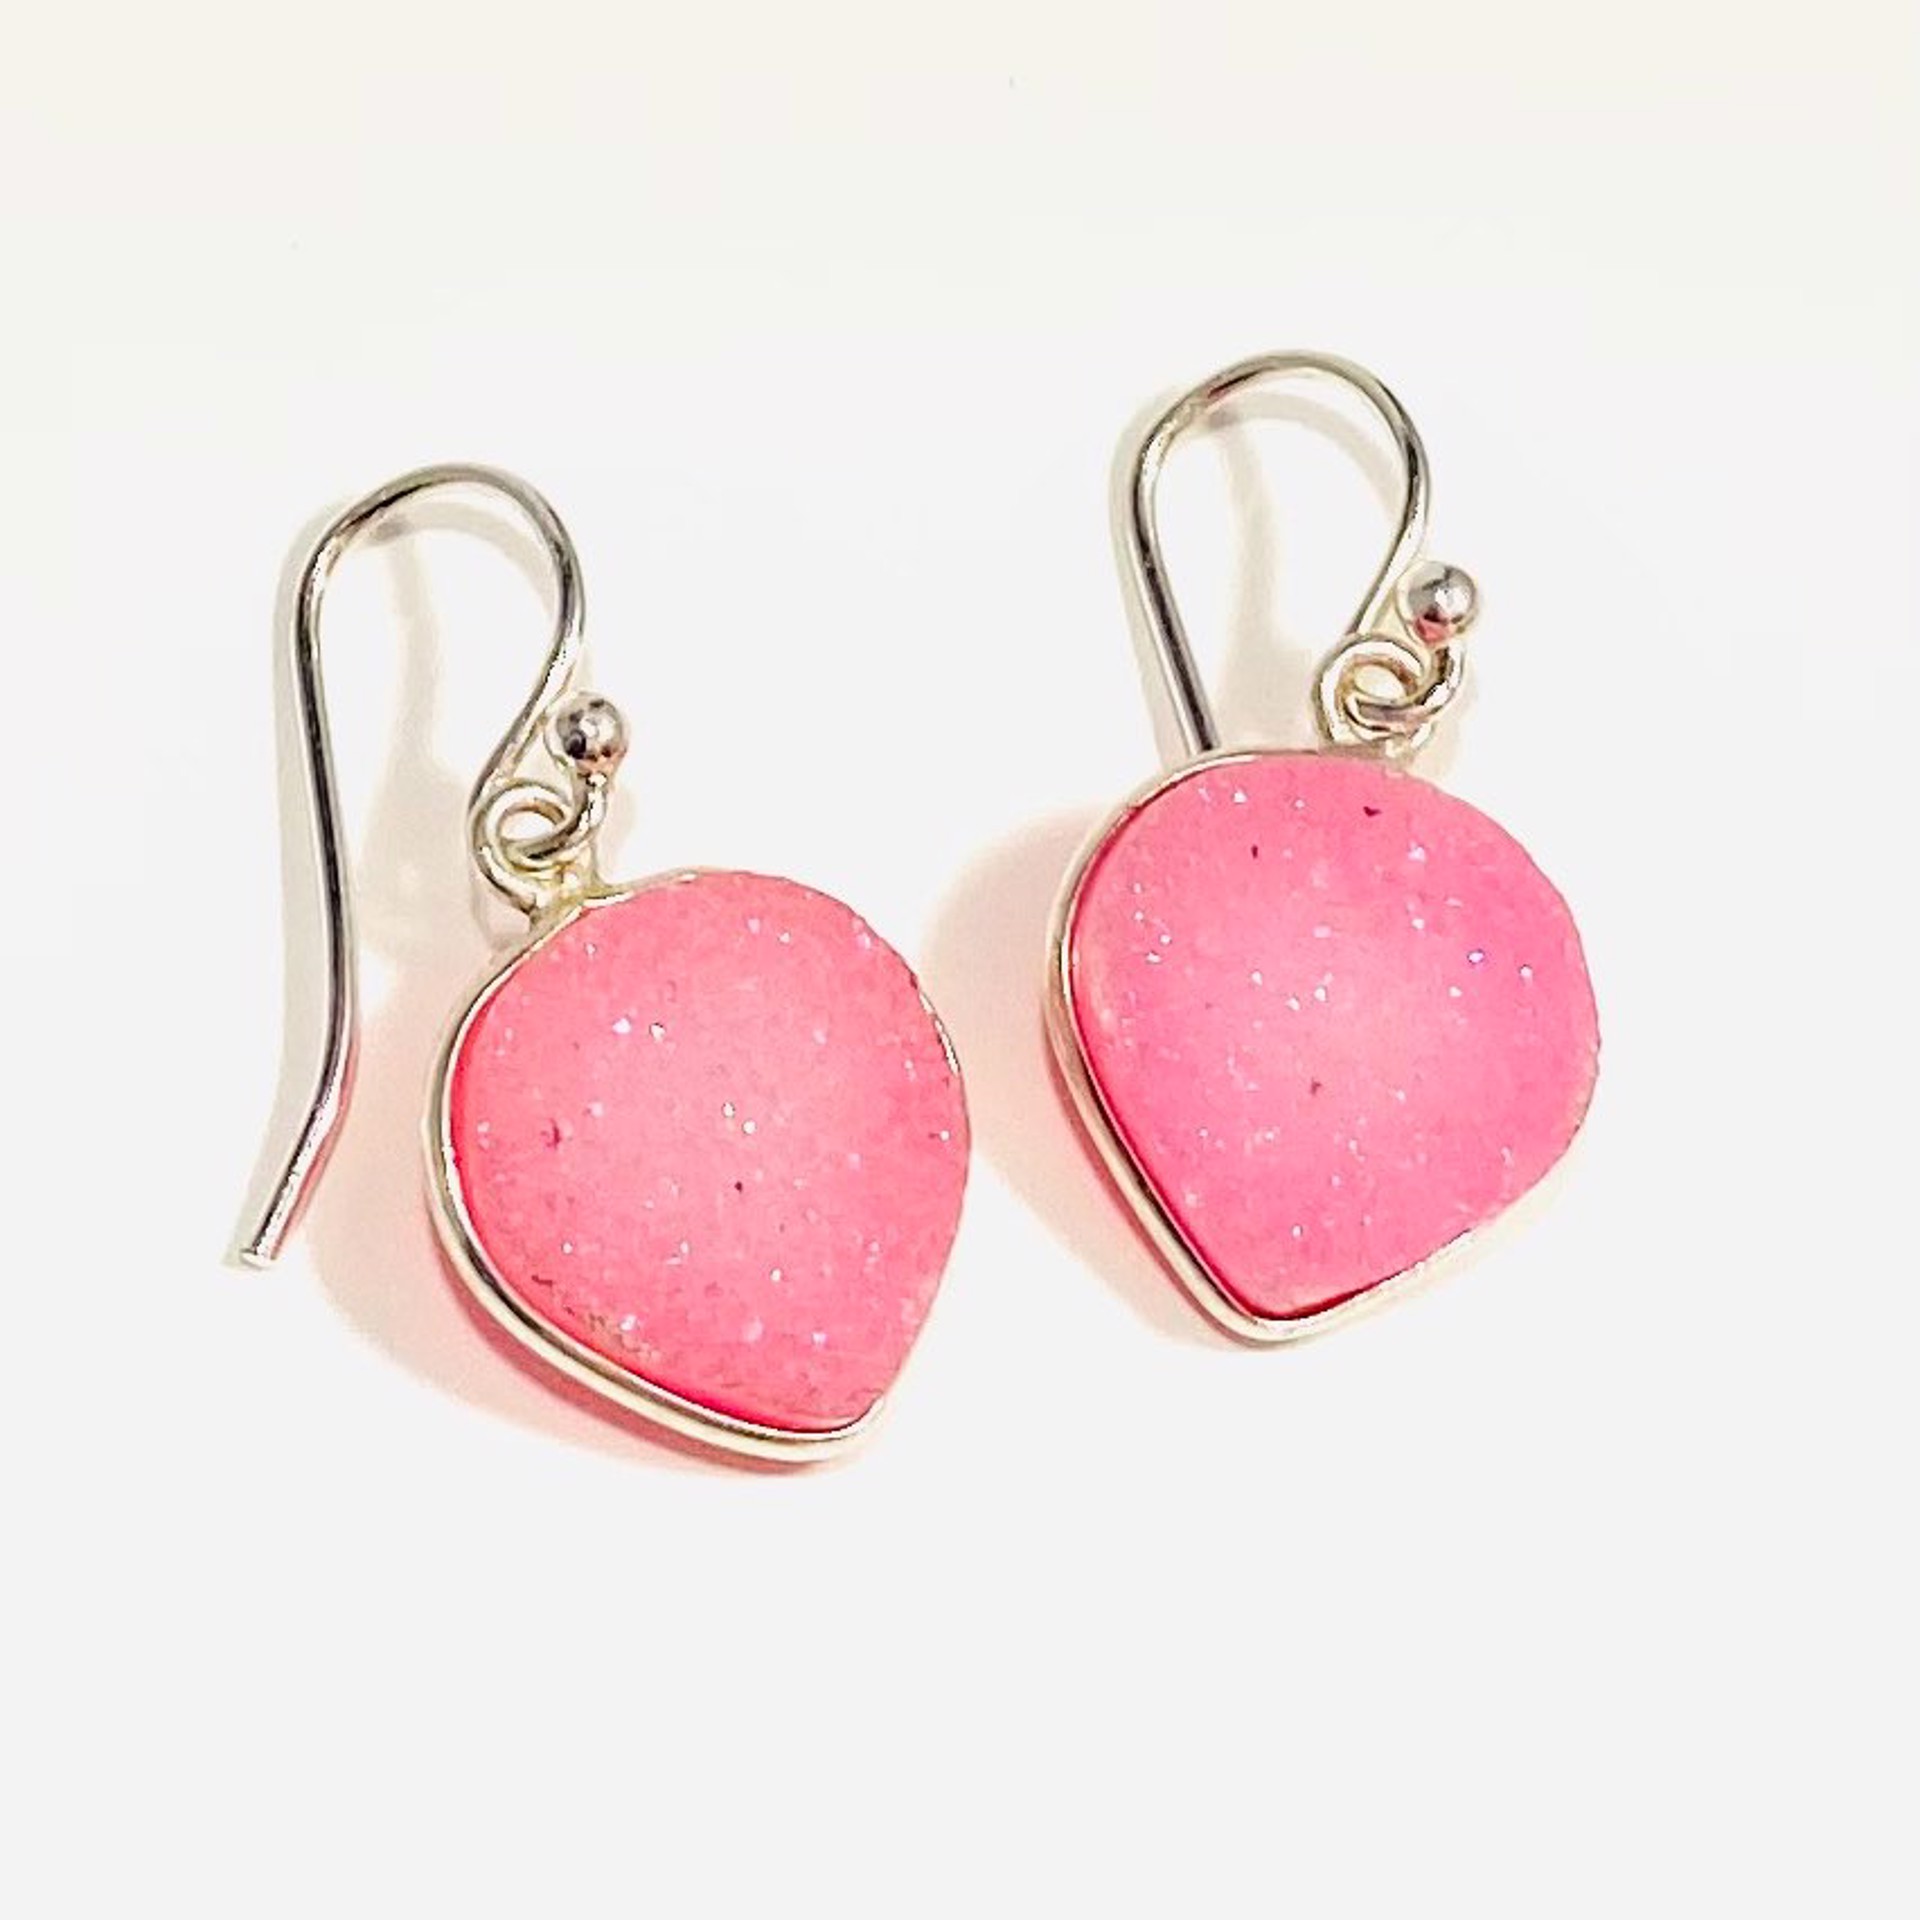 NT22-125 Heart Shaped Hot Pink Druzy Earrings by Nance Trueworthy